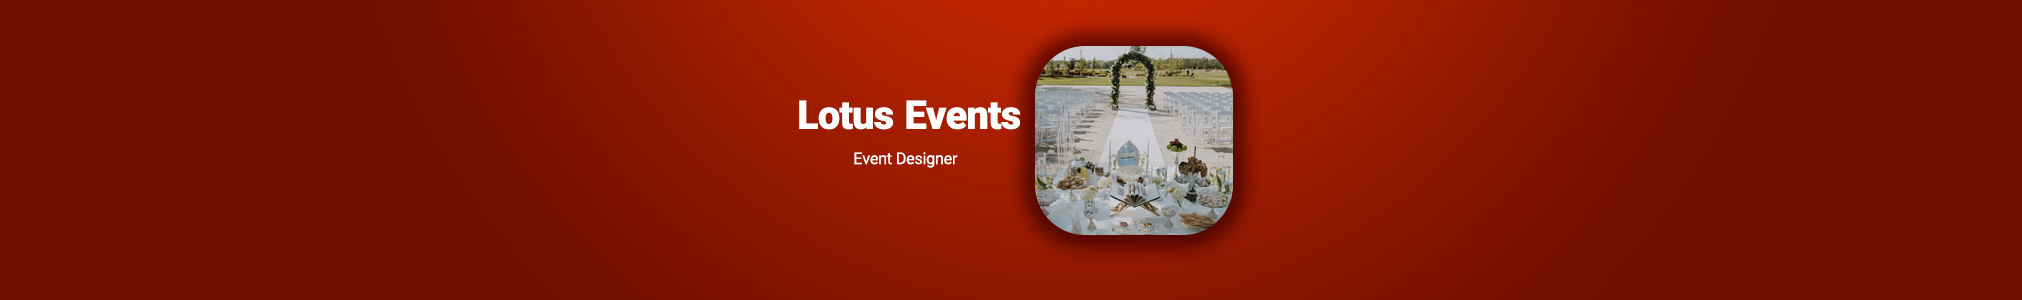 Lotus Events